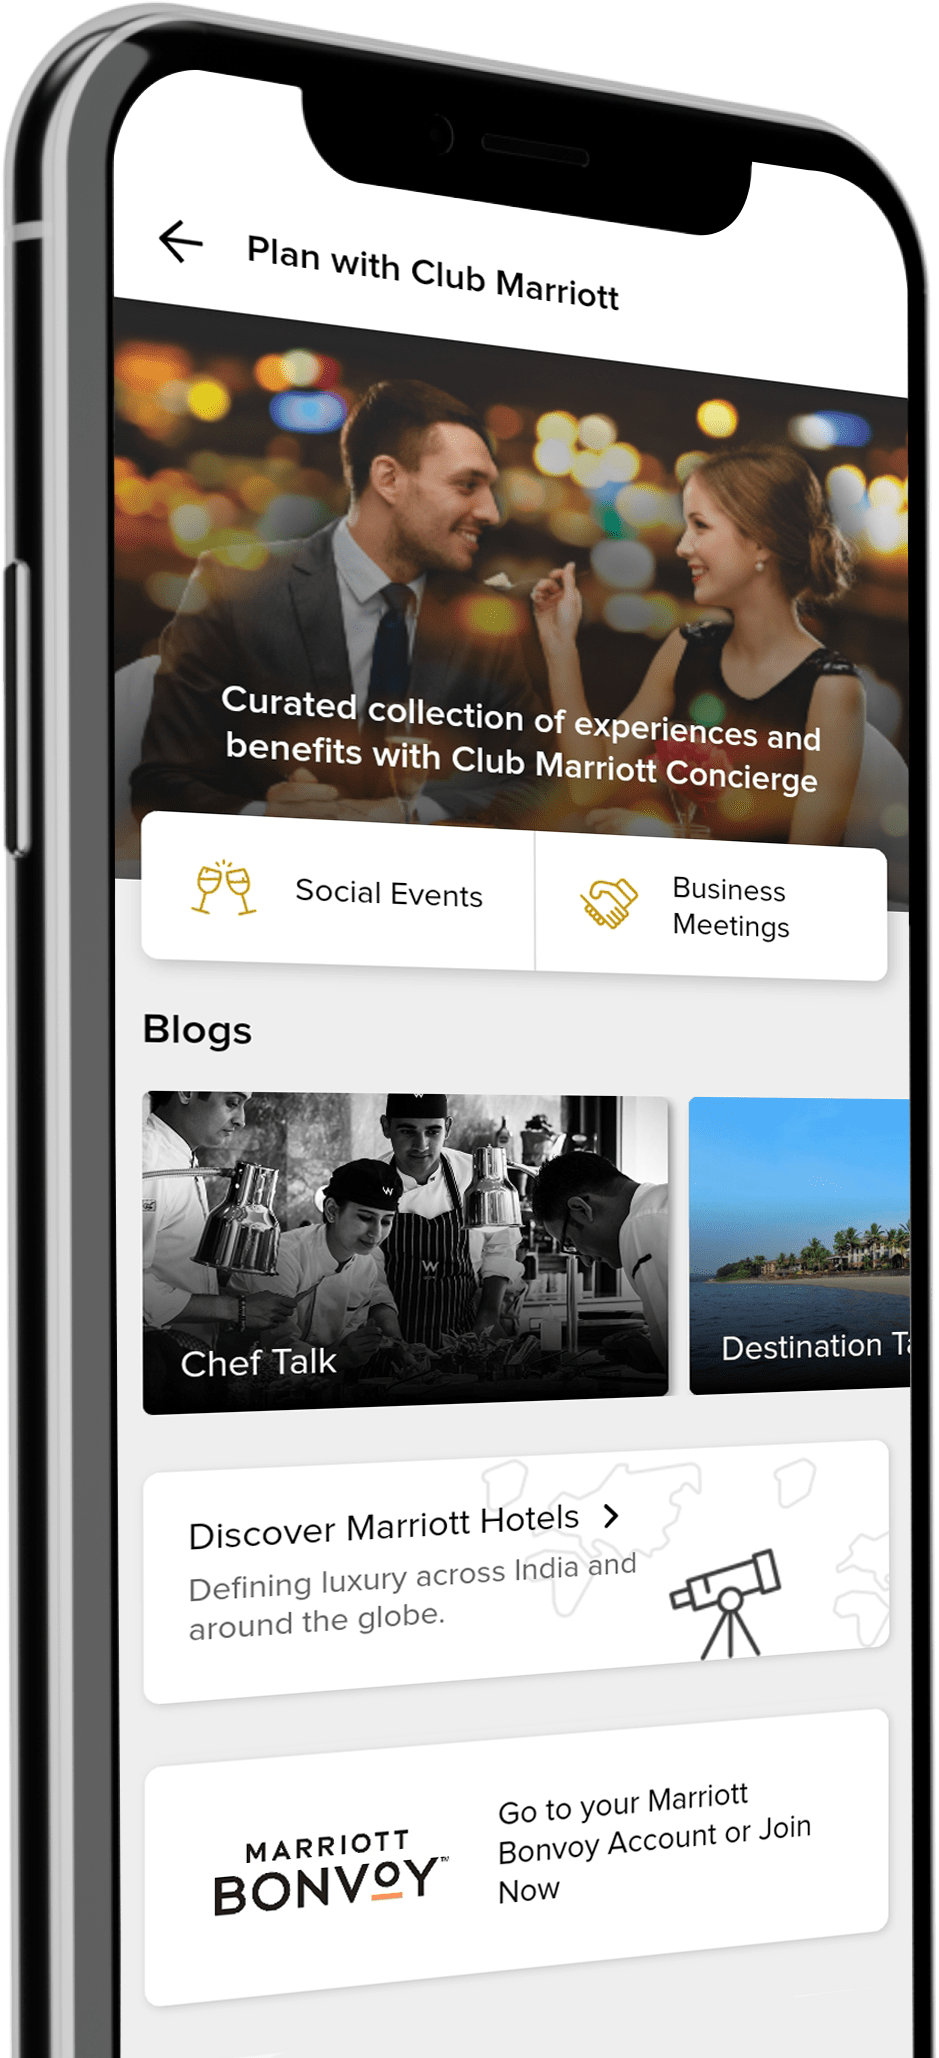 Downloade App of Club Marriott for Patner Benefits